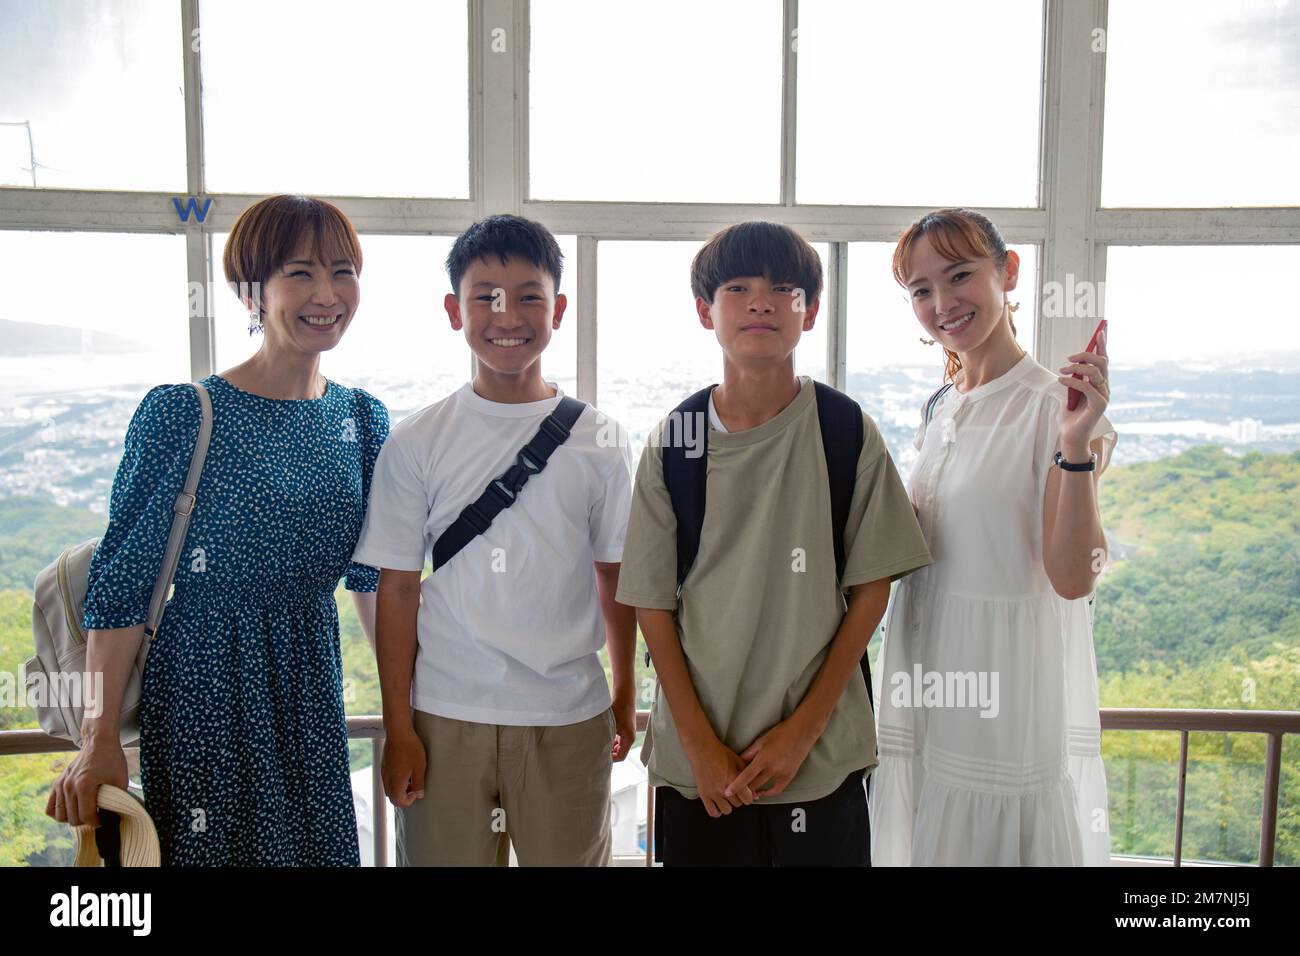 Vier Japaner, zwei Jungen und zwei reife Frauen an einem Tag, posieren für ein Foto, Seite an Seite, auf einer Aussichtsplattform. Stockfoto